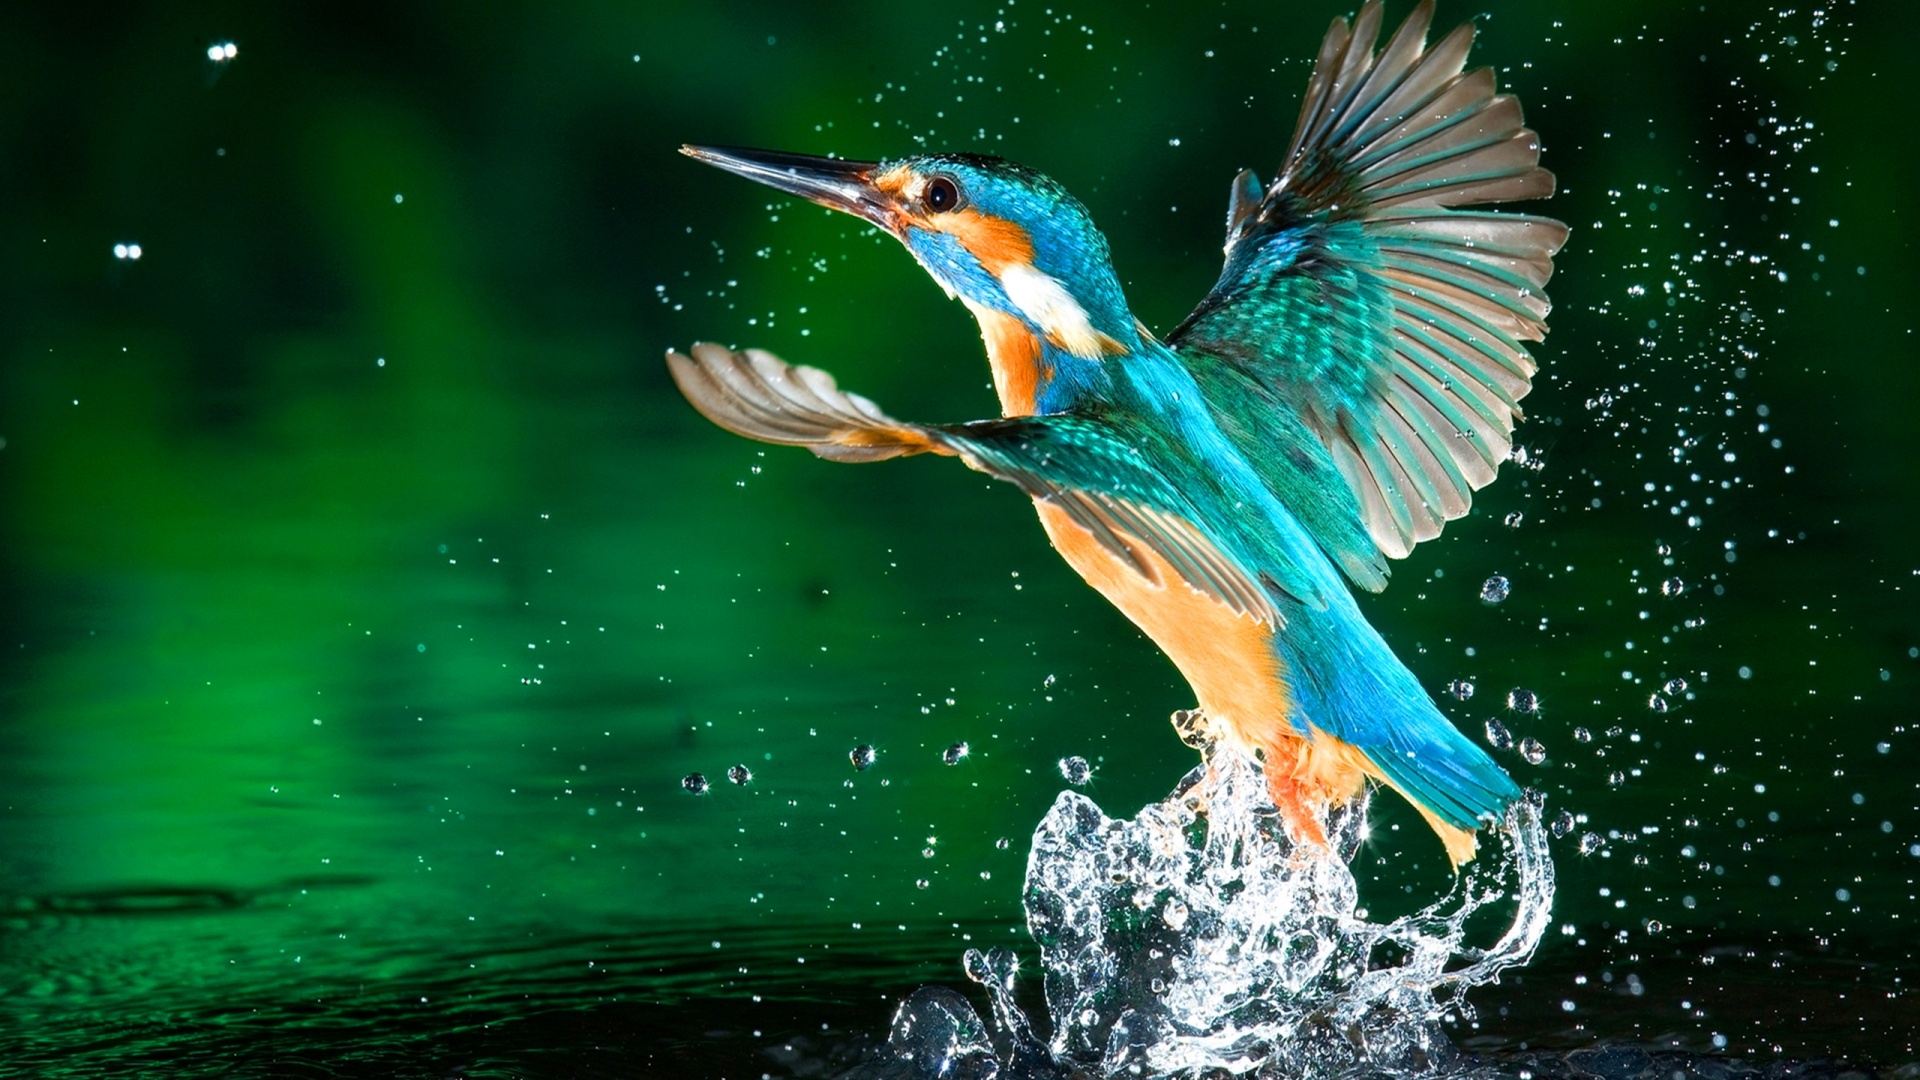 Birds 1080p Wallpaper - WallpaperSafari